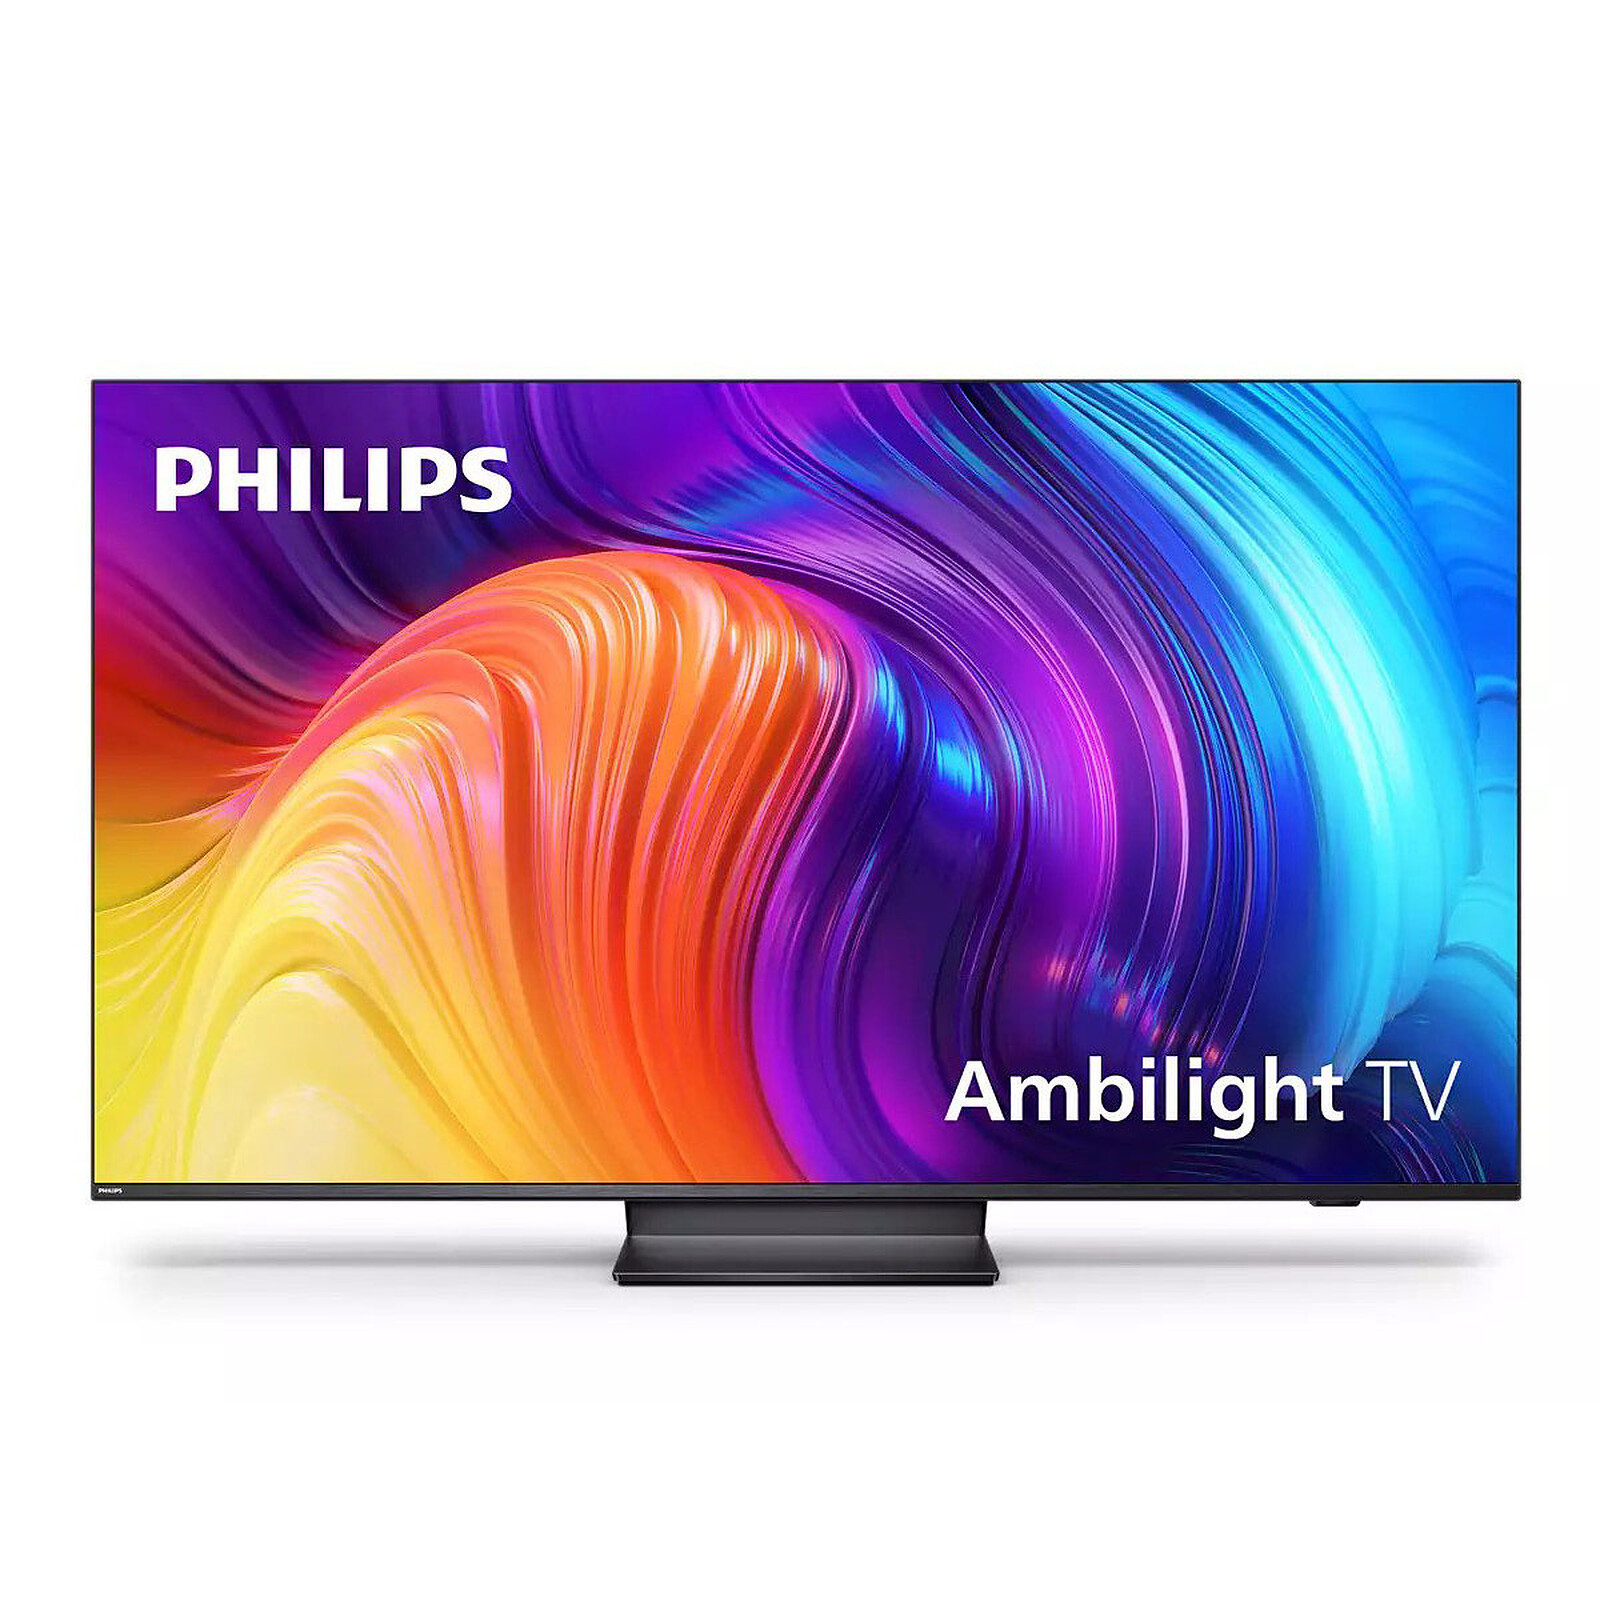 PHILIPS TV LED 4K 215 cm 85PUS8808/12 Ambilight TV The One 8808 XXL sur